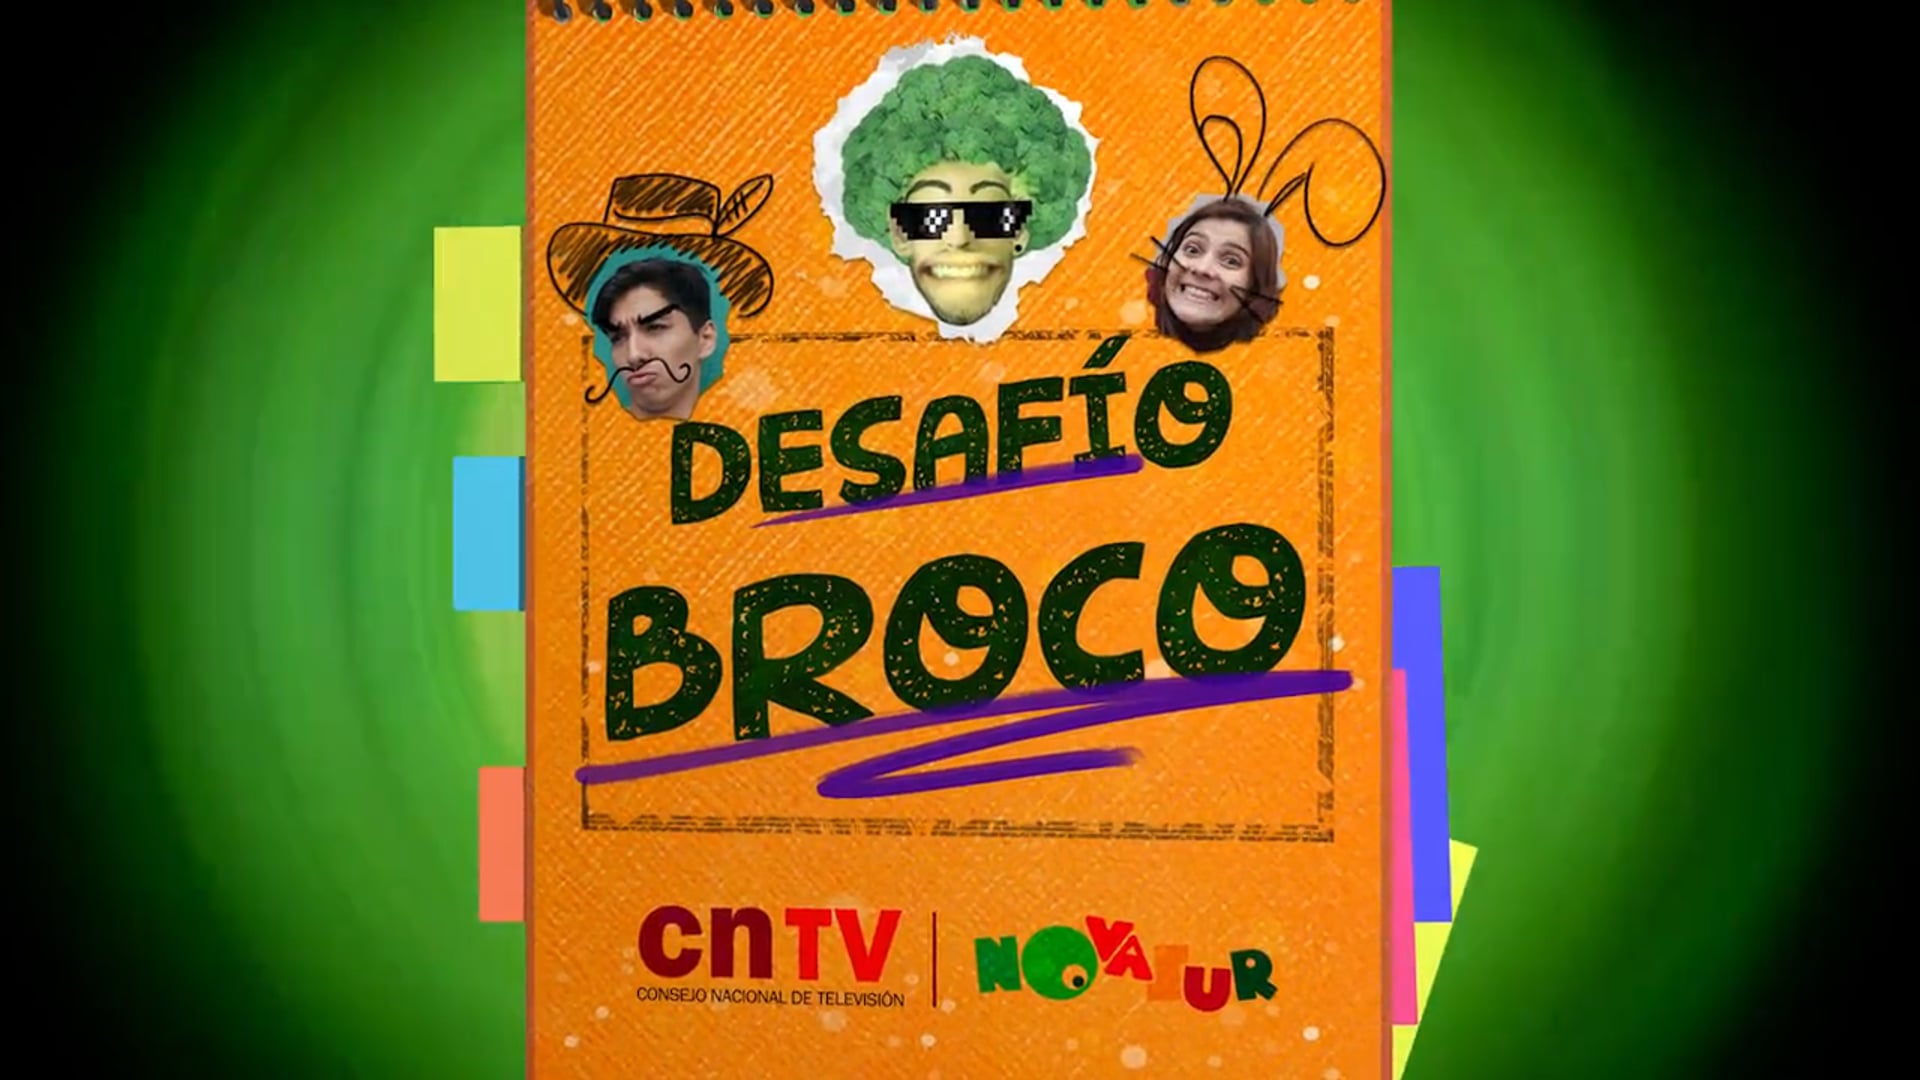 Desafio Broco, serie de TV